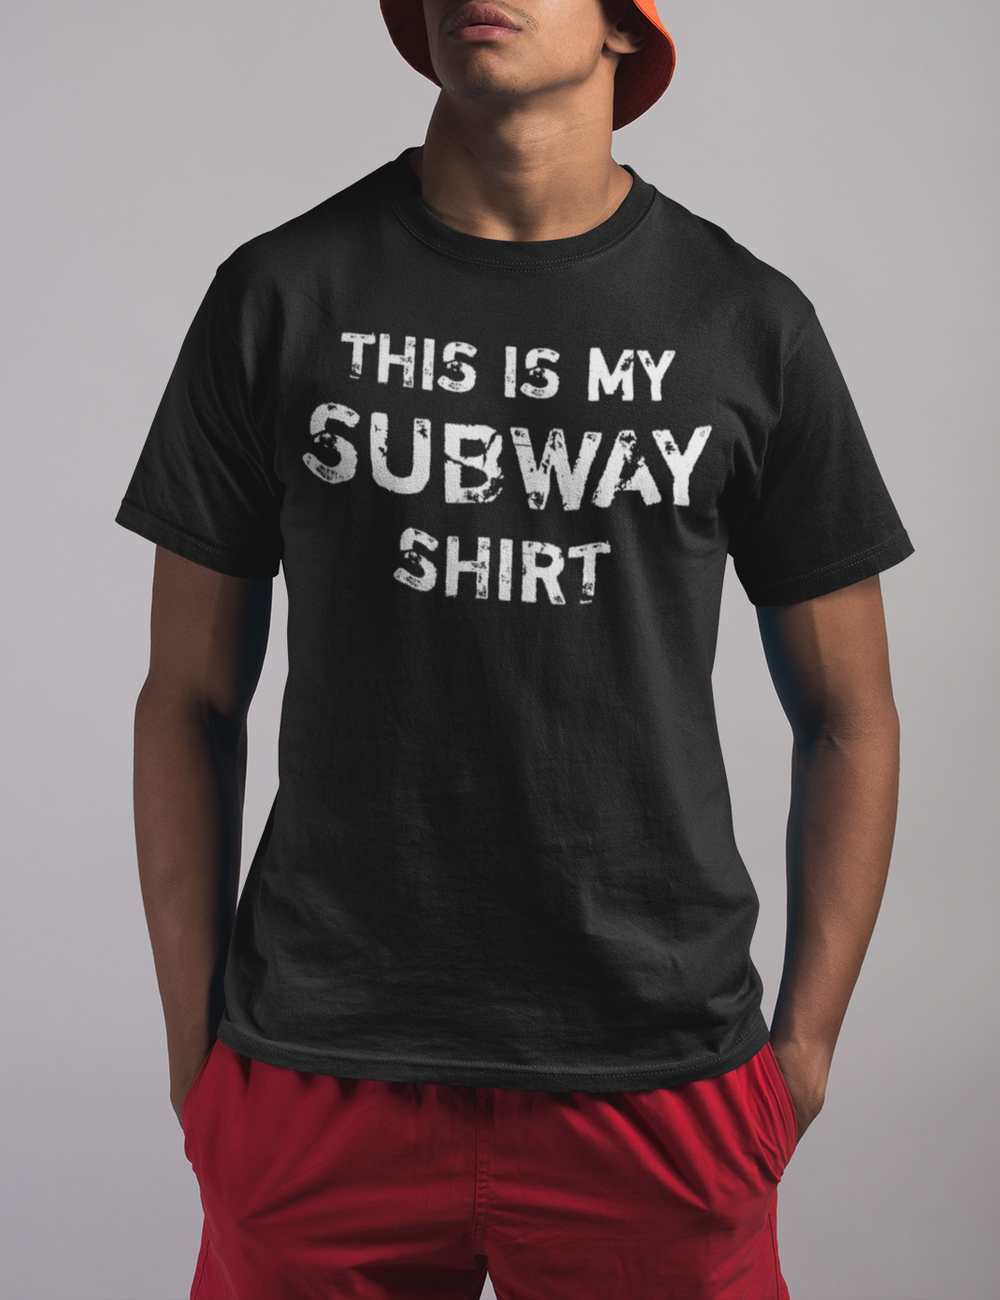 This Is My Subway Shirt Men's Classic T-Shirt OniTakai